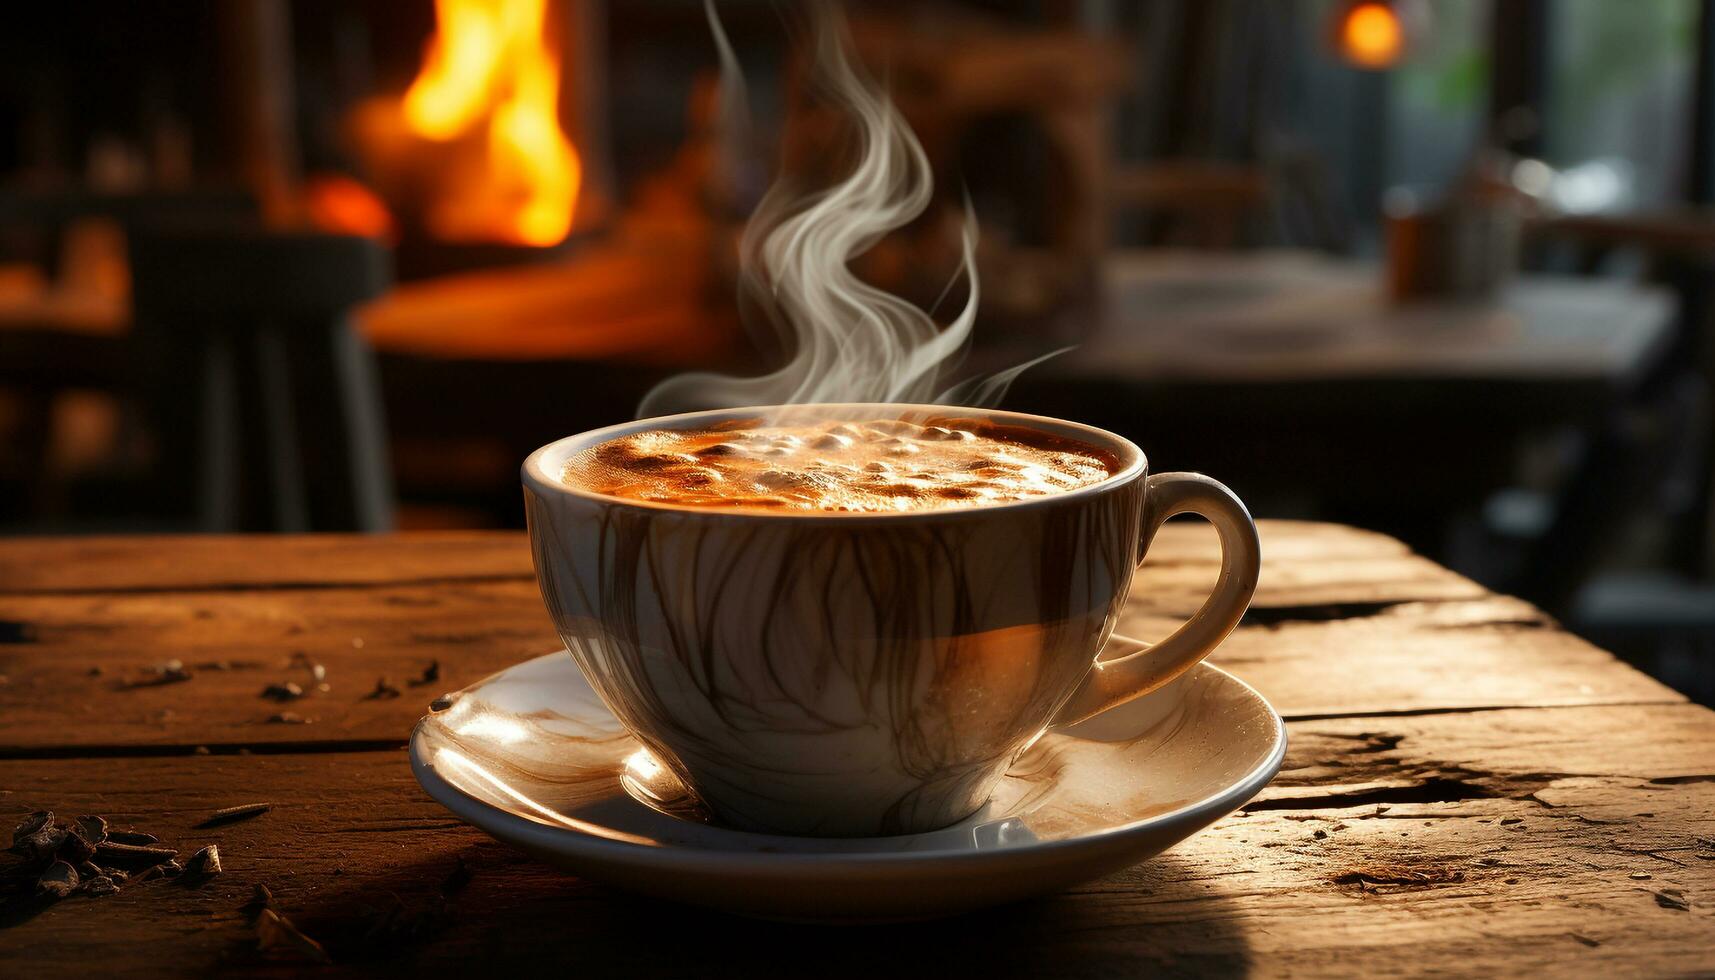 aromatisch Kaffee Tasse auf rustikal Tisch, Dampf erhebt sich, einladend Entspannung generiert durch ai foto